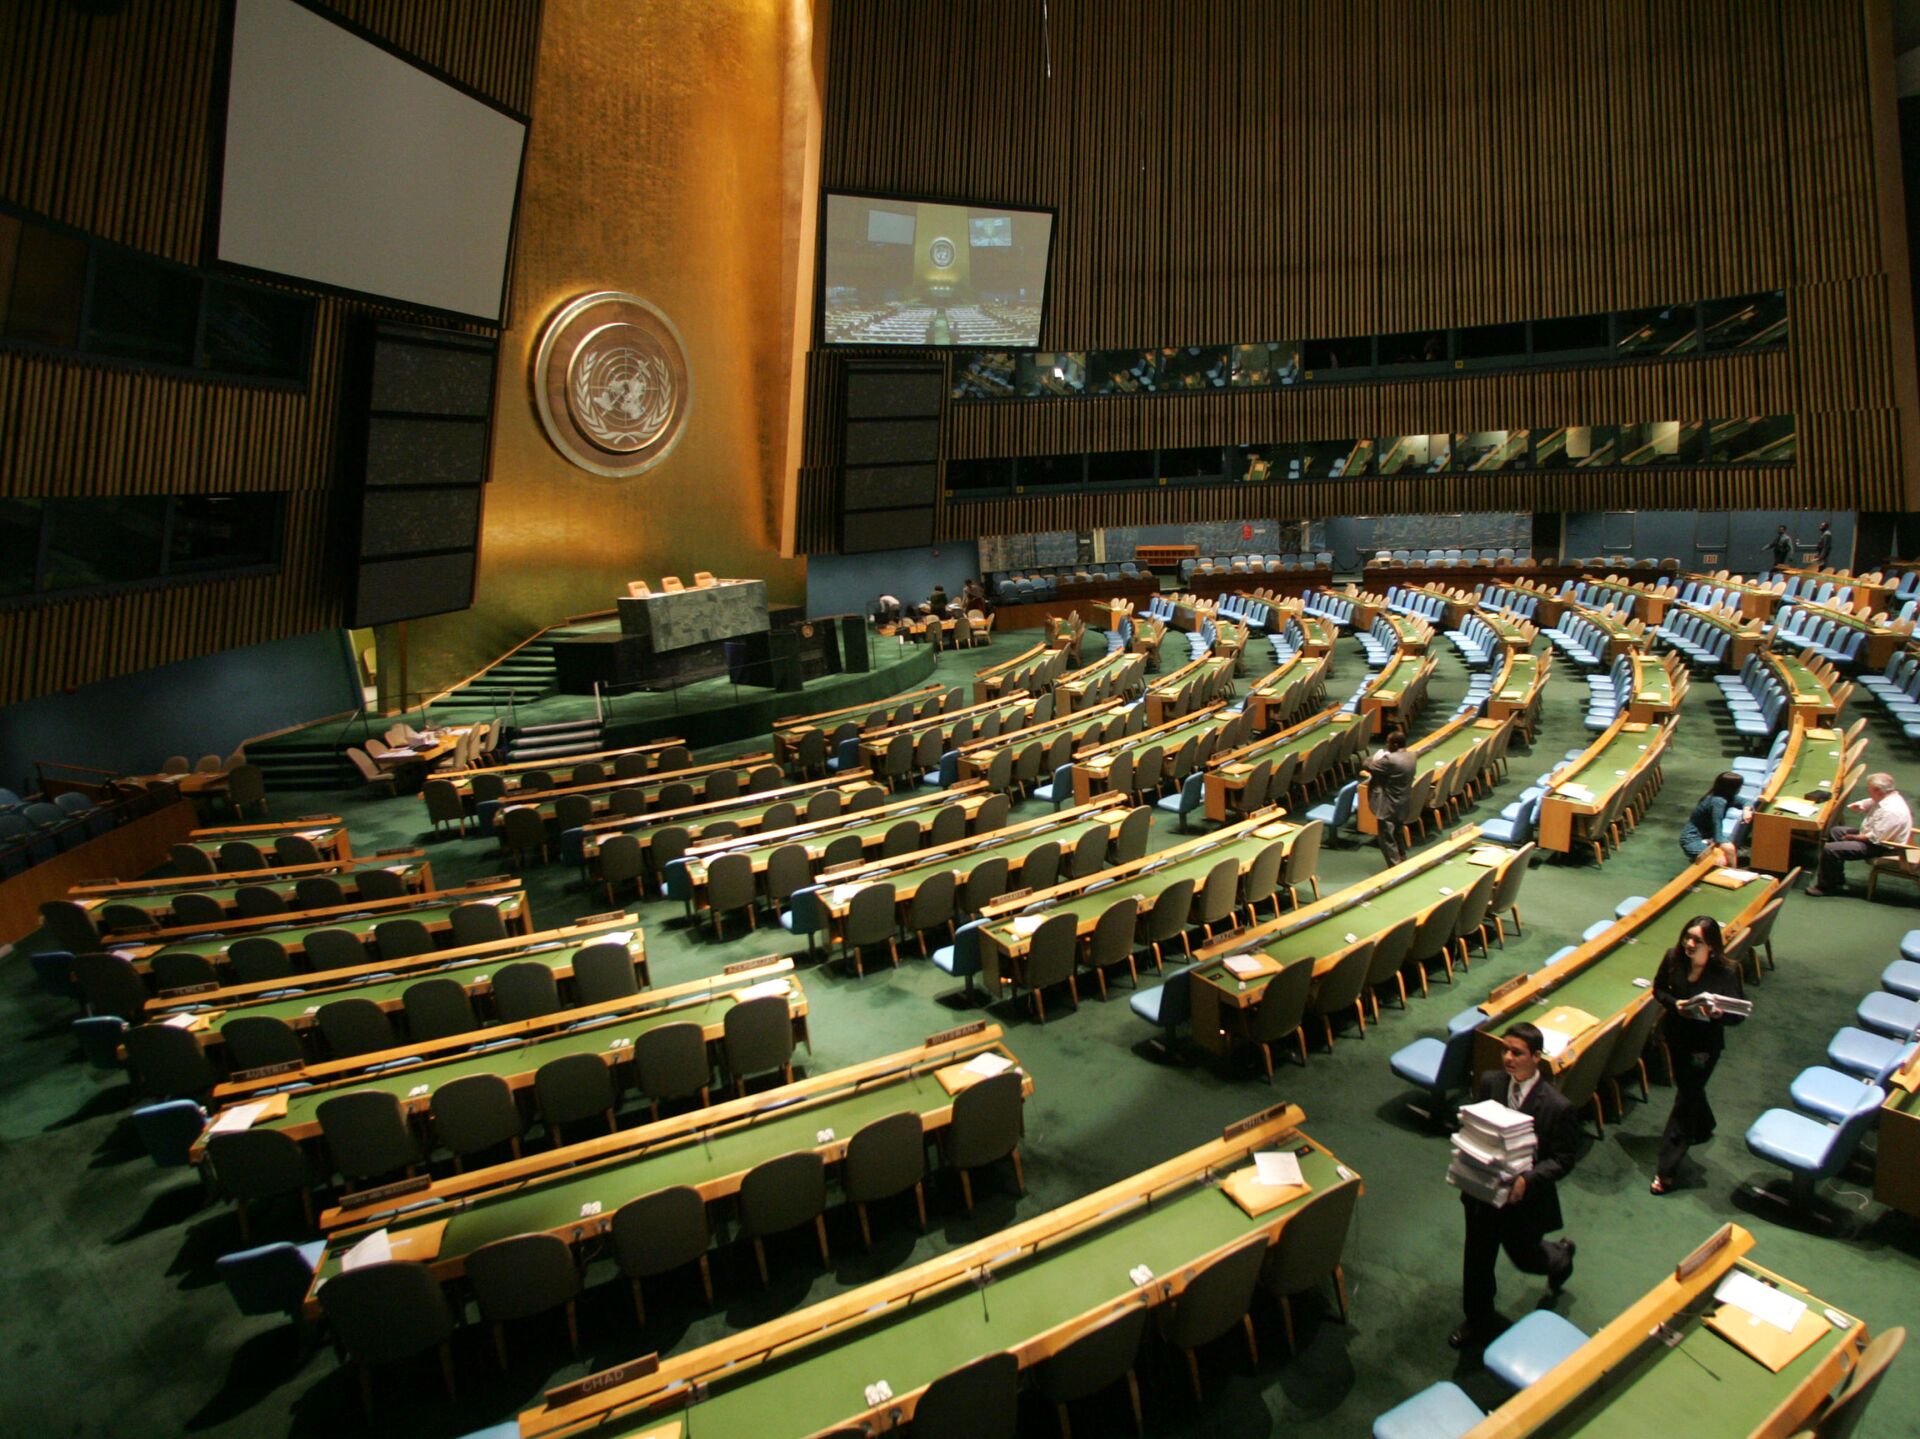 Ген оон. Зал Генеральной Ассамблеи ООН. Зал заседания Генассамблеи ООН трибуна. Генеральная Ассамблея ООН 2022. Зал Генеральной Ассамблеи ООН В Нью-Йорке.